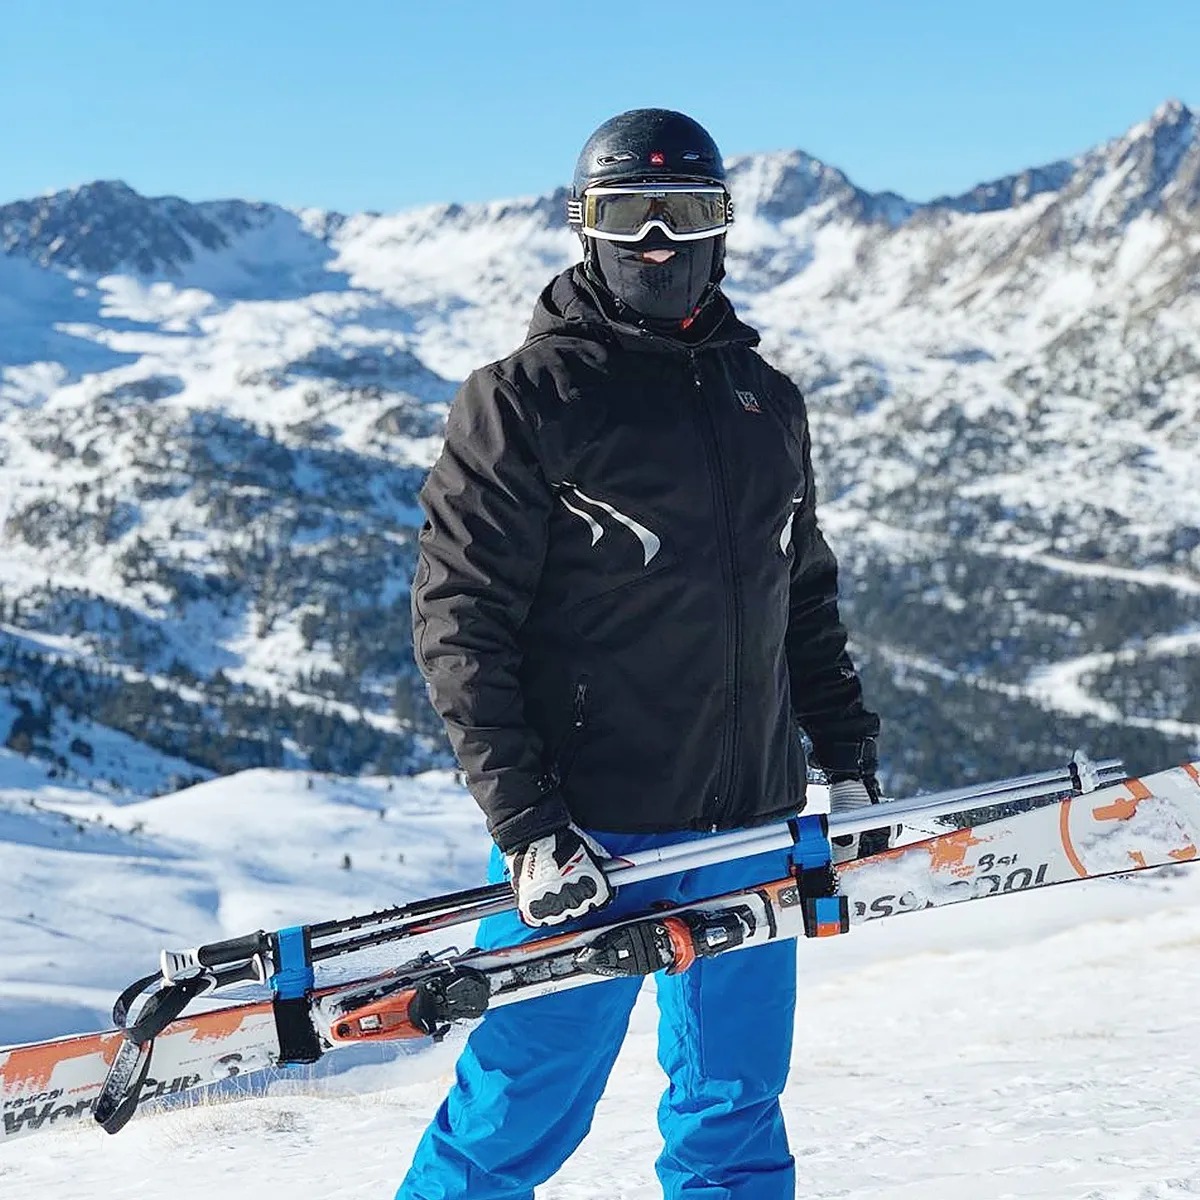 Приспособление для переноски лыж и лыжных палок SKI-N-GO Blue 96-130 L